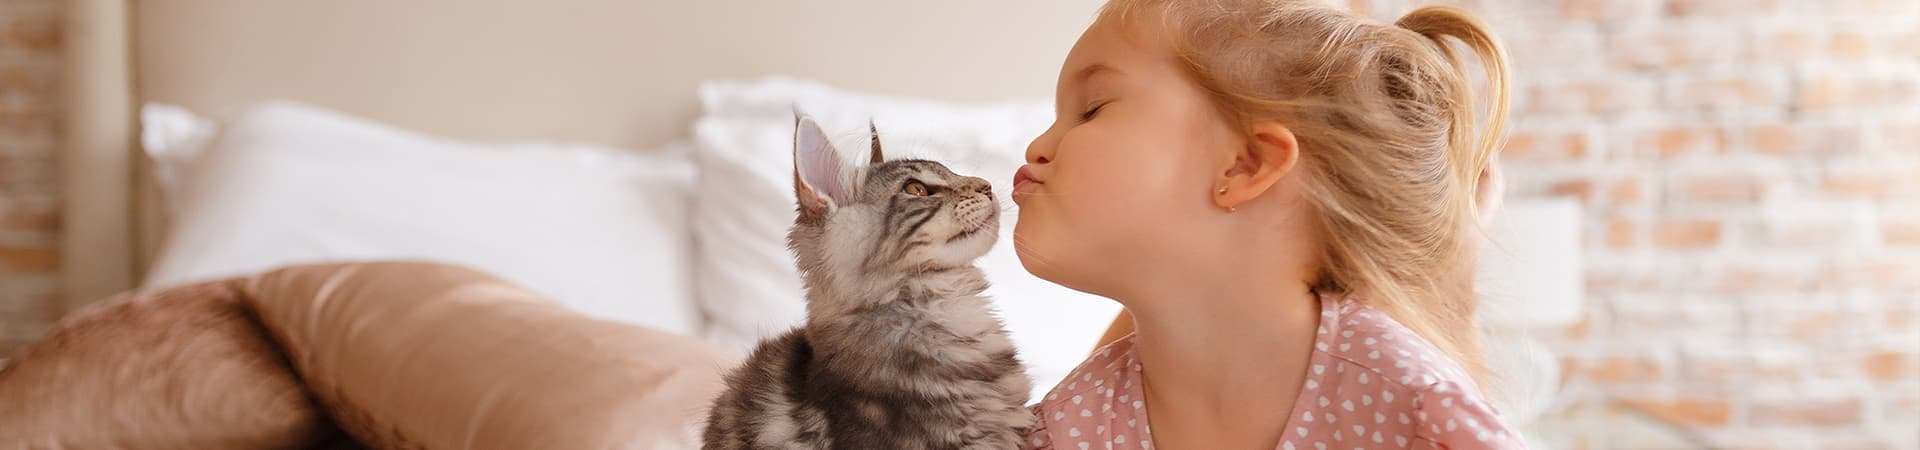 Maine-Coon Katze zusammen mit einem kleinen Mädchen